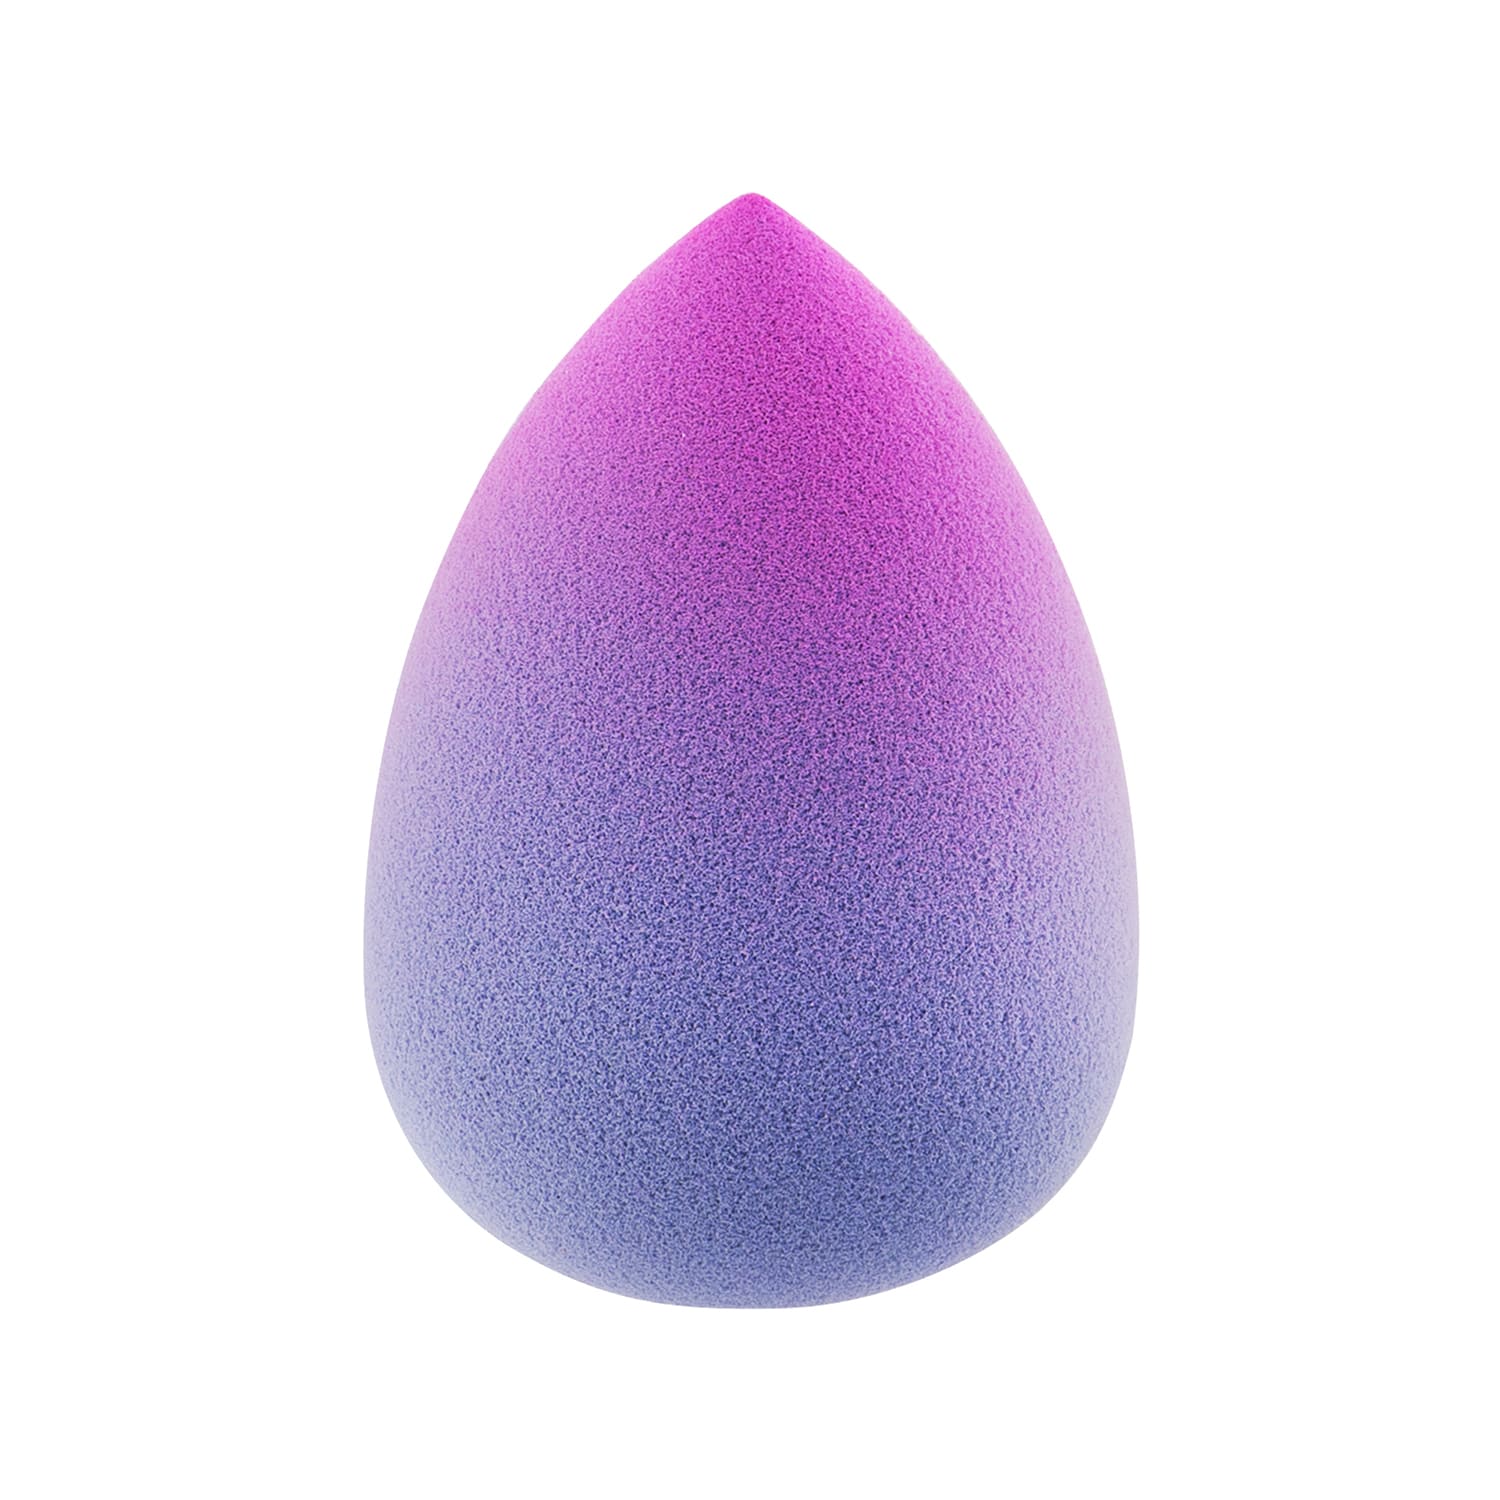 Large Drop Double-ended Blending Sponge Purple Gradient Большой двусторонний косметический спонж для макияжа капля, фиолетовый градиент 